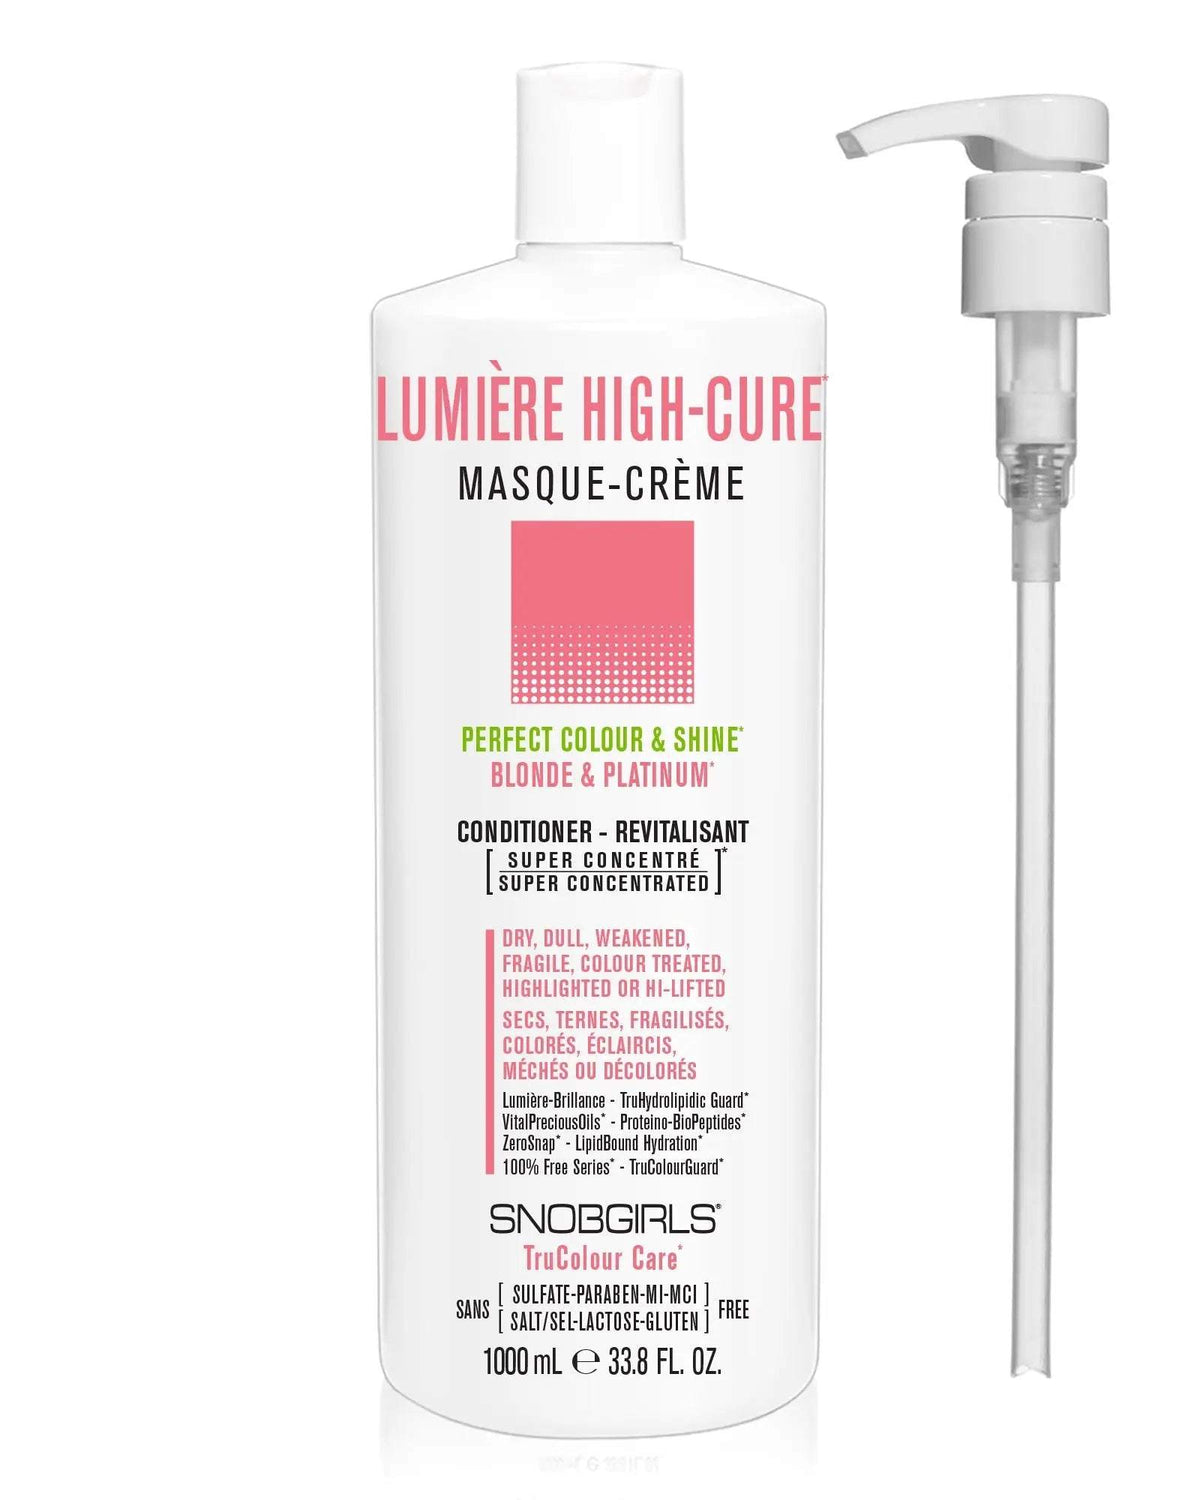 LUMIERE HIGHCURE Masque-Creme (conditioner) 33.8 FL. OZ. + Pump - SNOBGIRLS.com